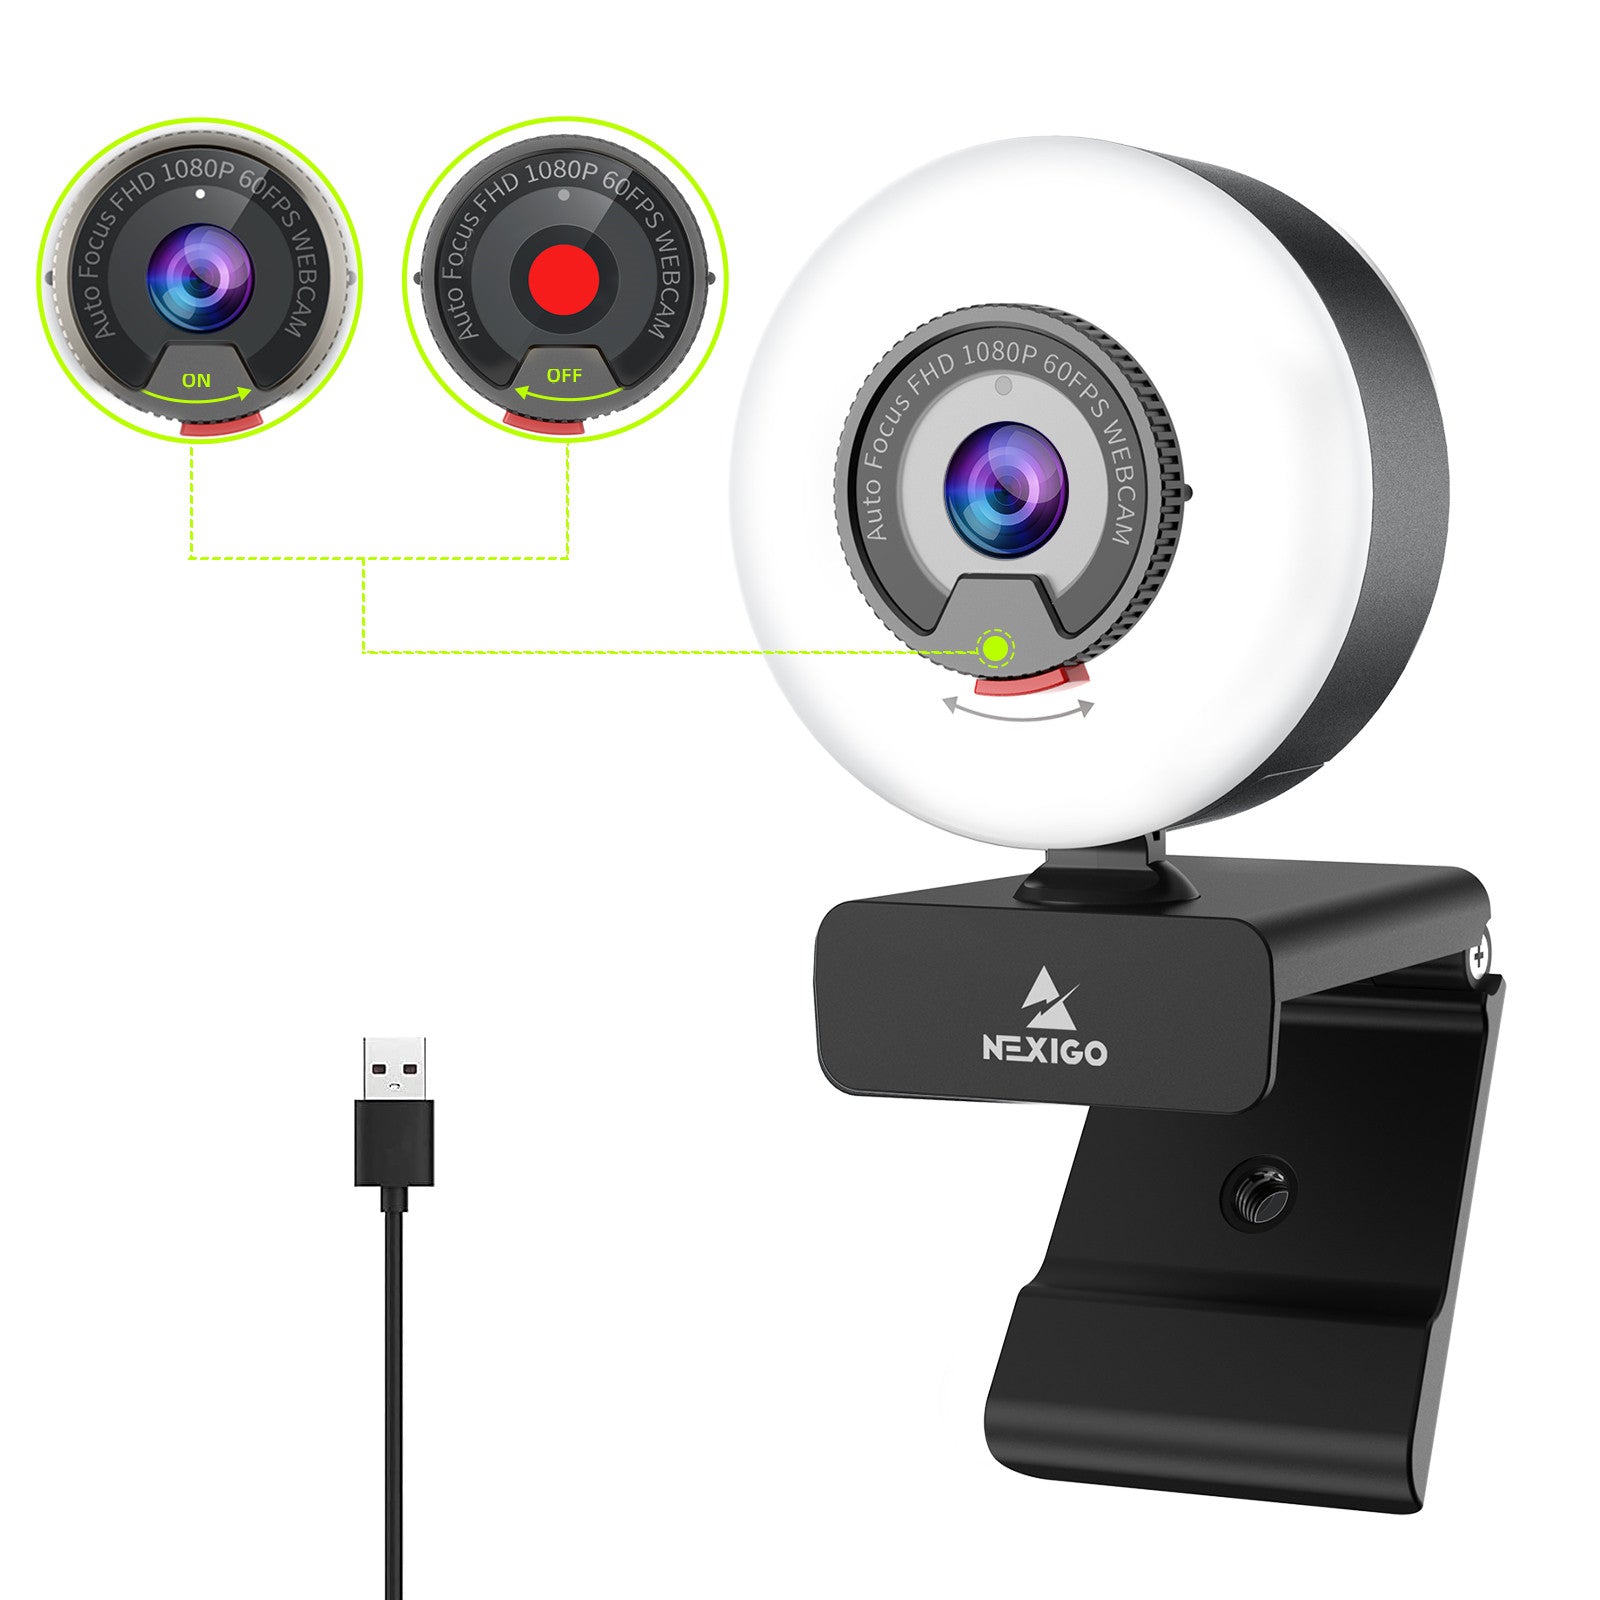 NexiGo N960E Streaming Webcam